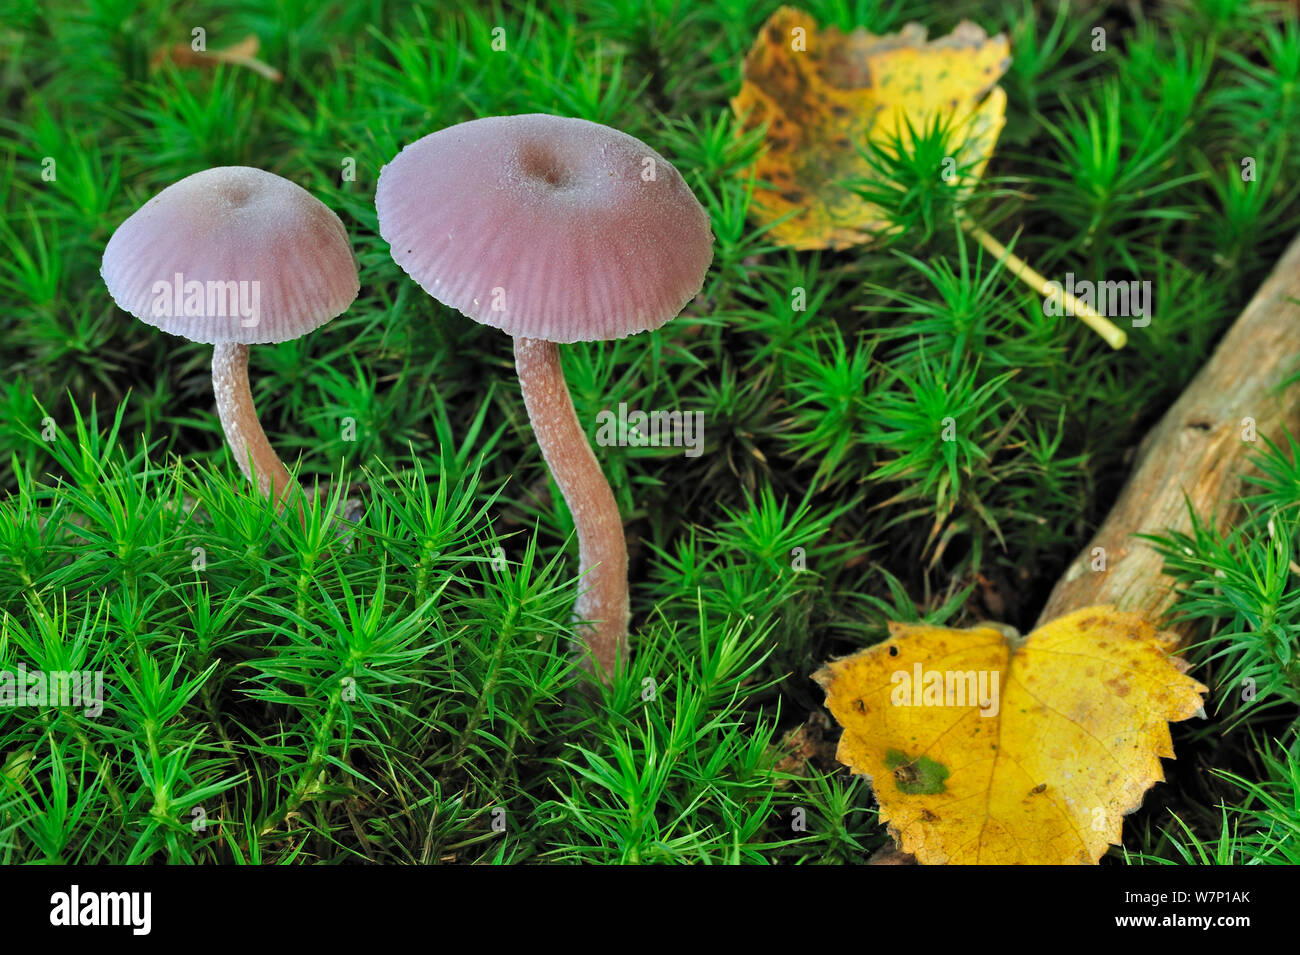 Améthyste (Laccaria amethystea séducteur / amethystina) de plus en plus parmi la mousse sur sol de la forêt en automne, octobre Belgique Banque D'Images